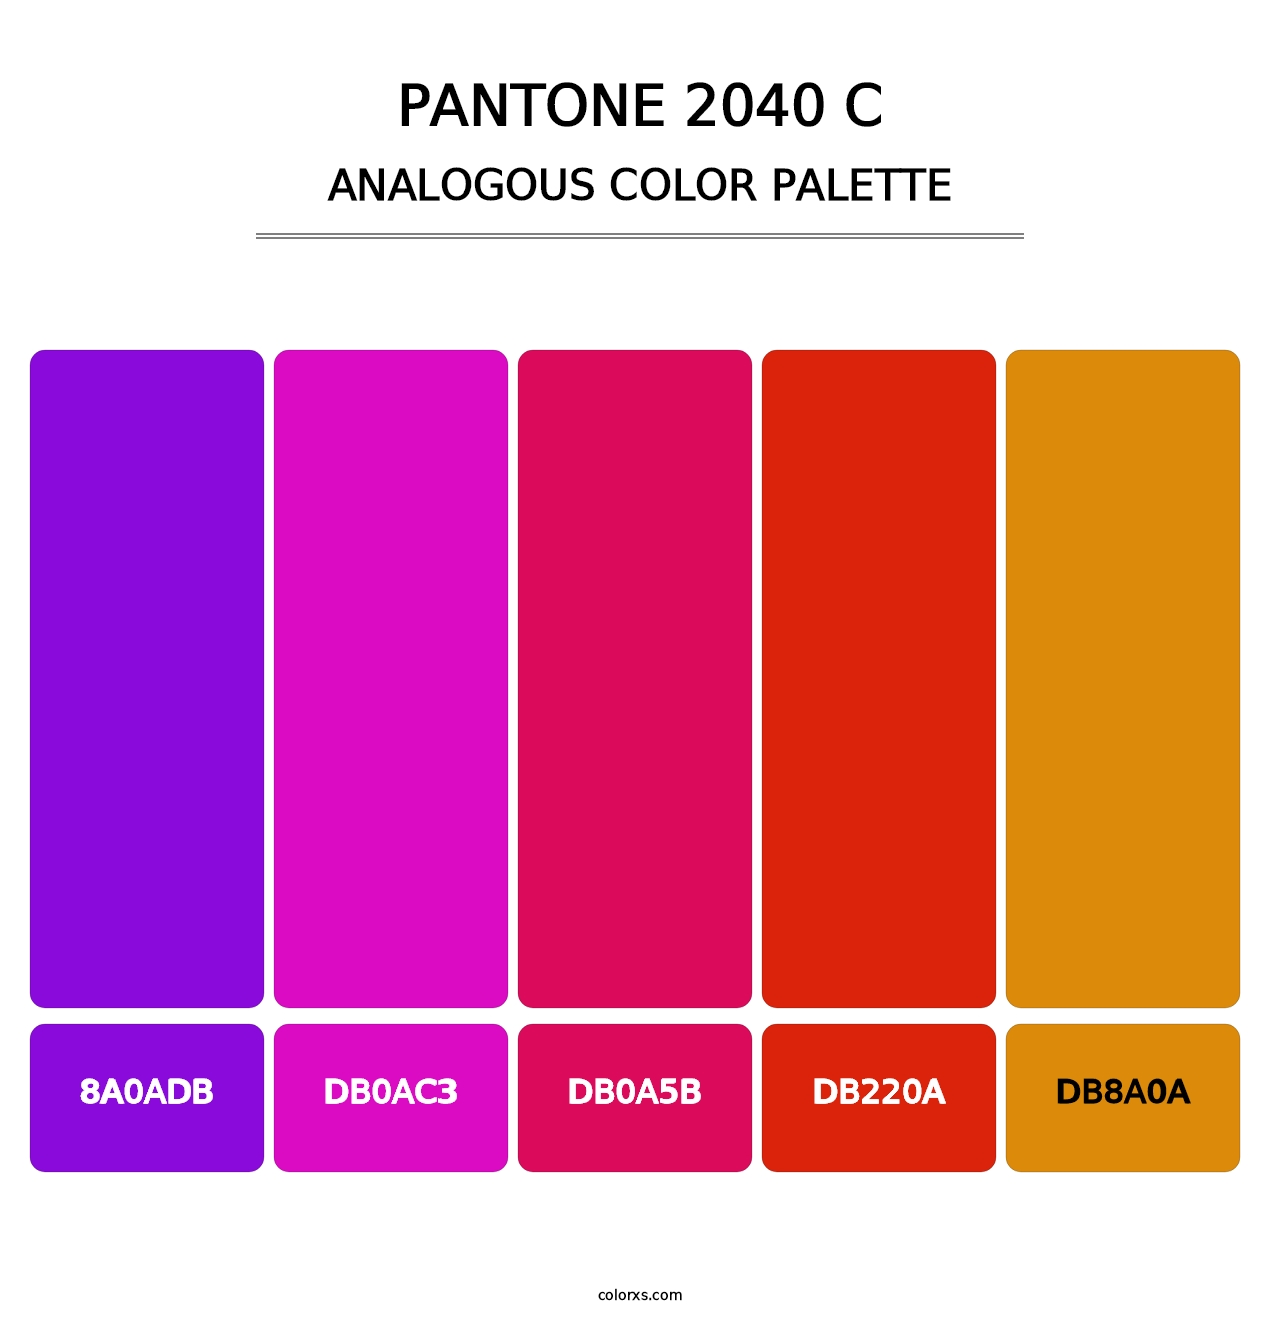 PANTONE 2040 C - Analogous Color Palette